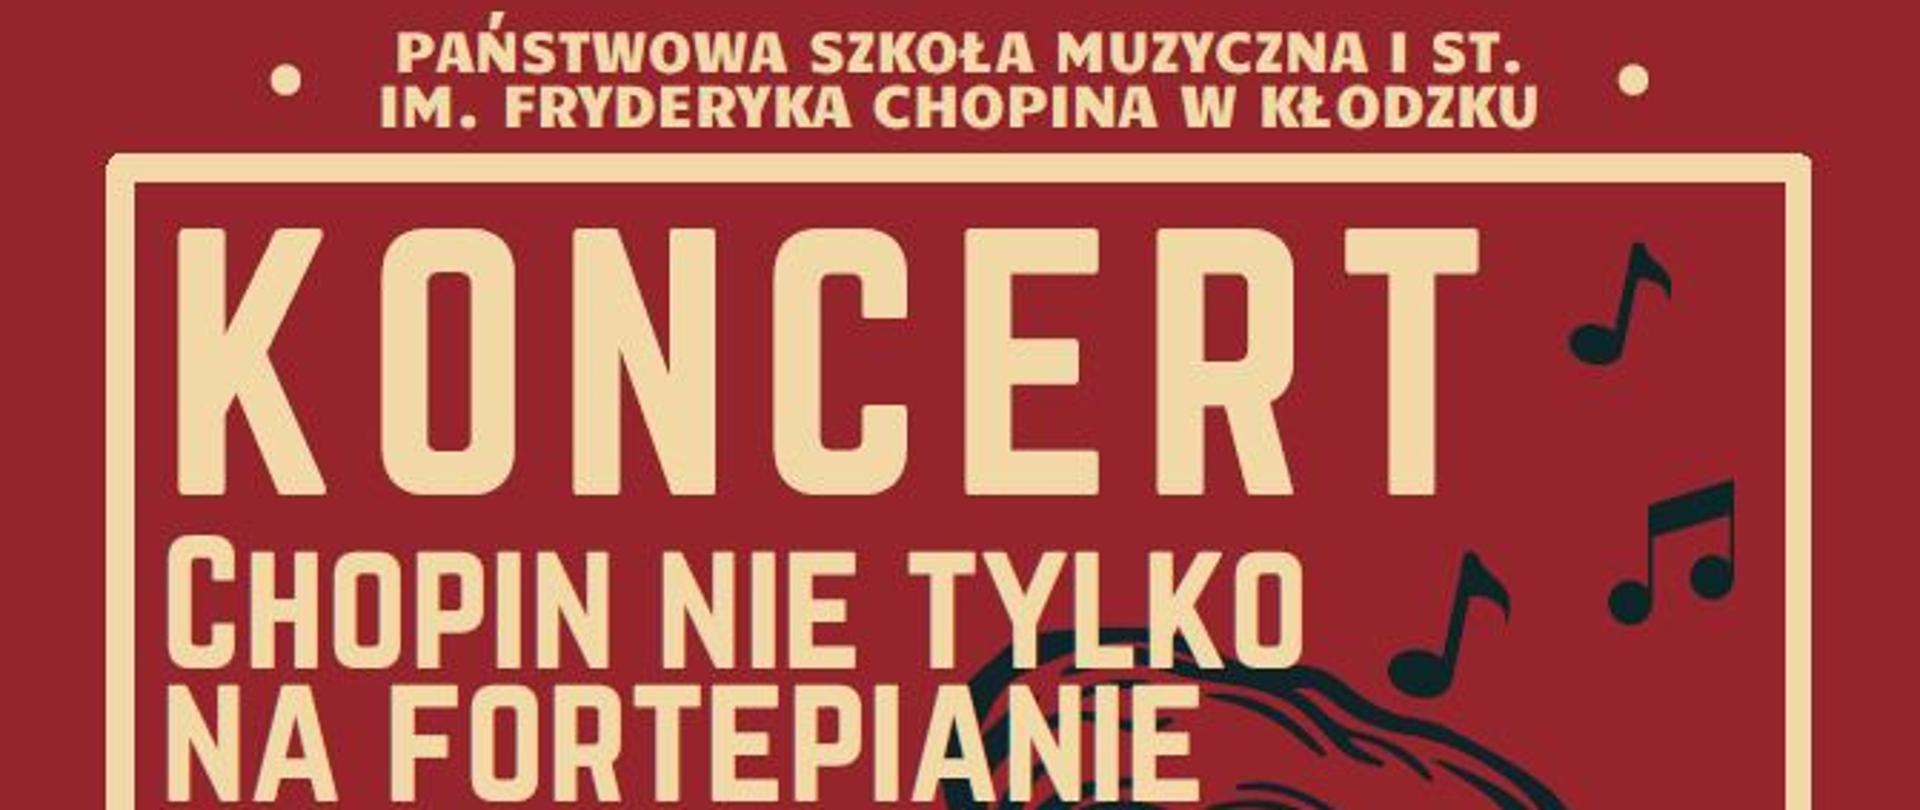 Plakat na czerwonym tle z sylwetką portretową Fryderyka Chopina wraz z szczegółowa informacją tekstową dotyczącą koncertu Chopin nie tylko na fortepianie, który odbędzie się 1 marca 2024 w auli PSM w Kłodzku